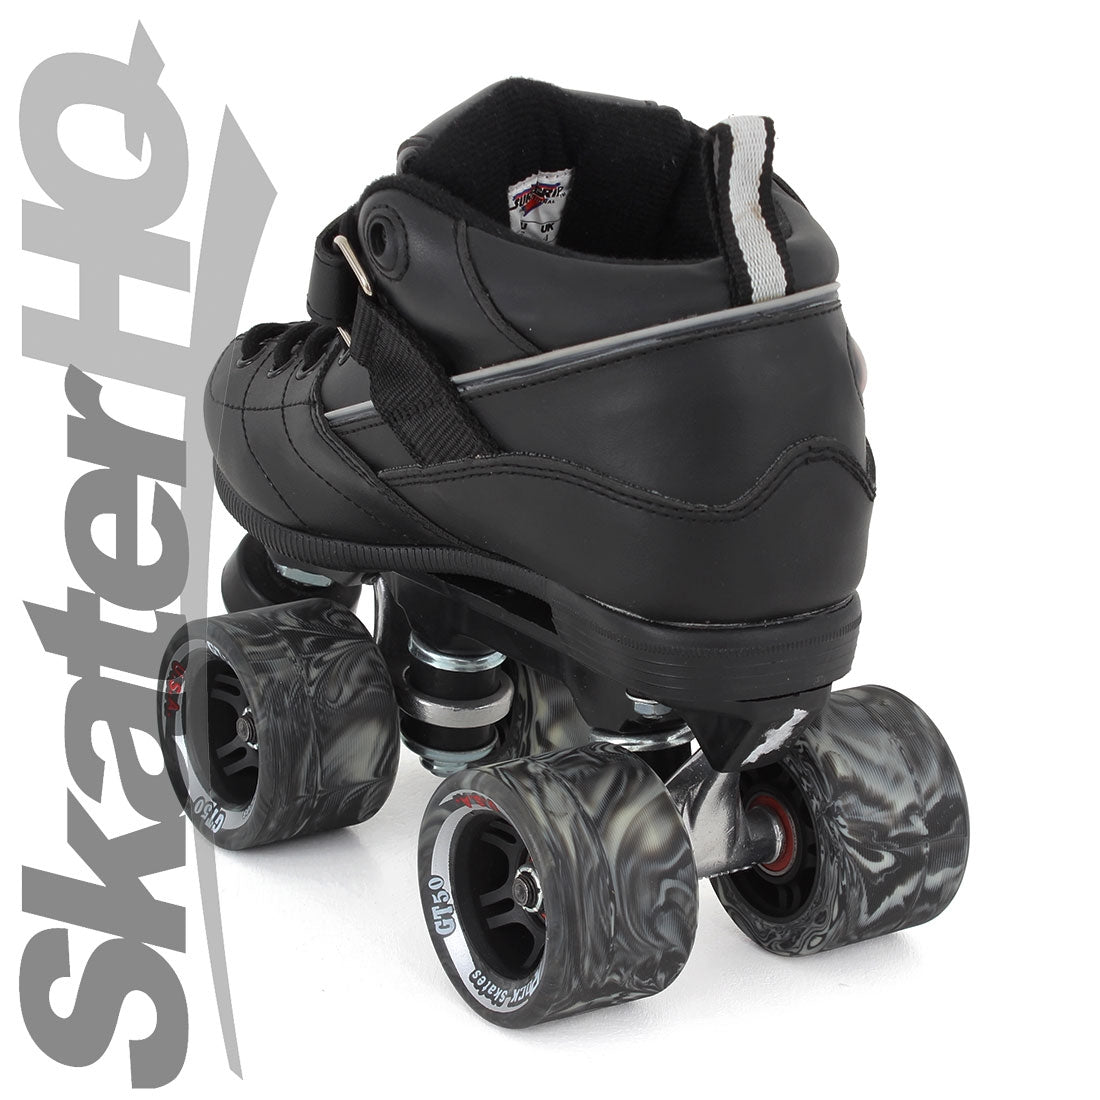 Sure-Grip Rock GT50 Black 6US/ EU38 Roller Skates